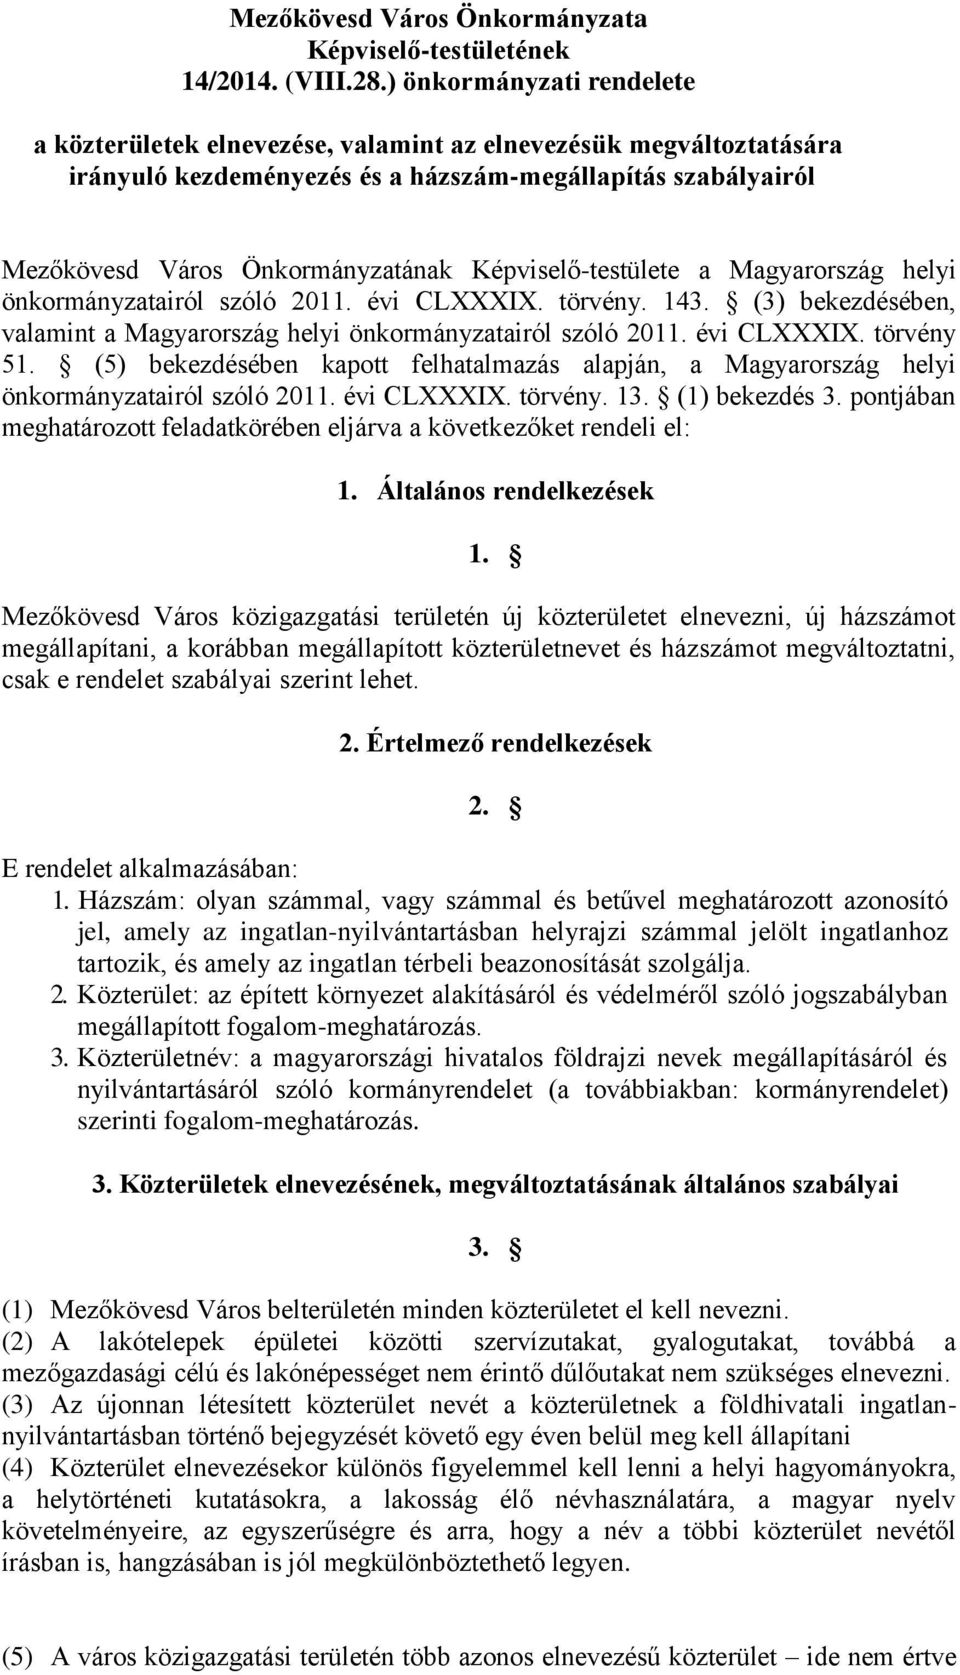 Képviselő-testülete a Magyarország helyi önkormányzatairól szóló 2011. évi CLXXXIX. törvény. 143. (3) bekezdésében, valamint a Magyarország helyi önkormányzatairól szóló 2011. évi CLXXXIX. törvény 51.